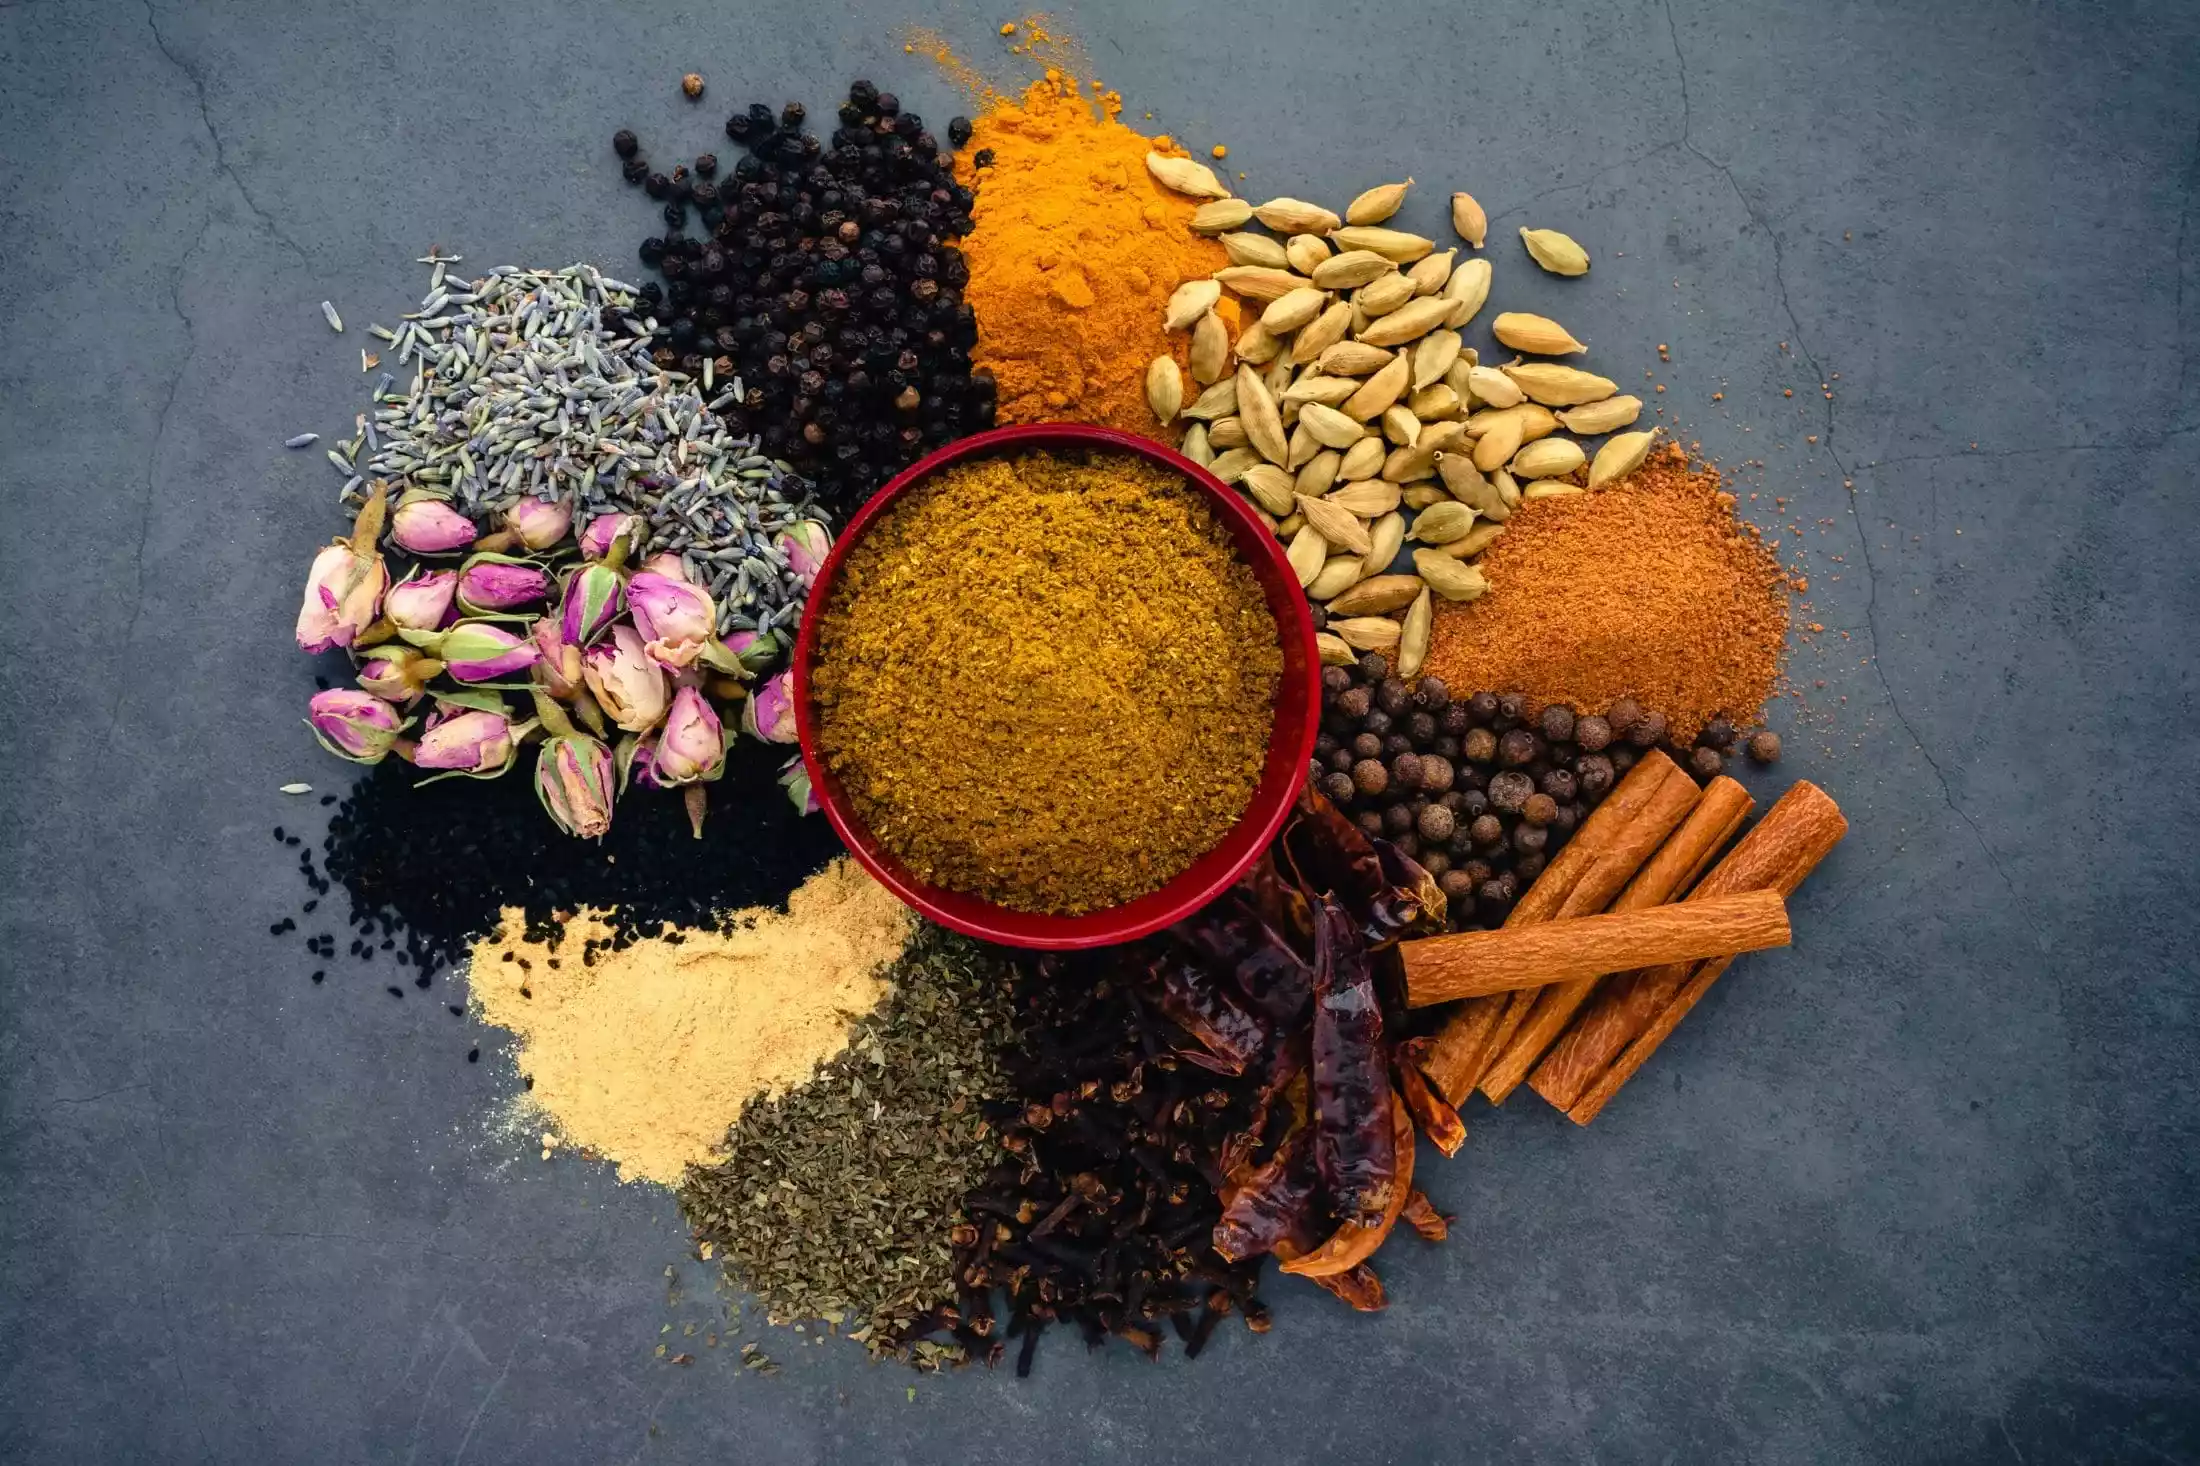 Moroccan spice blend – Ras El Hanout